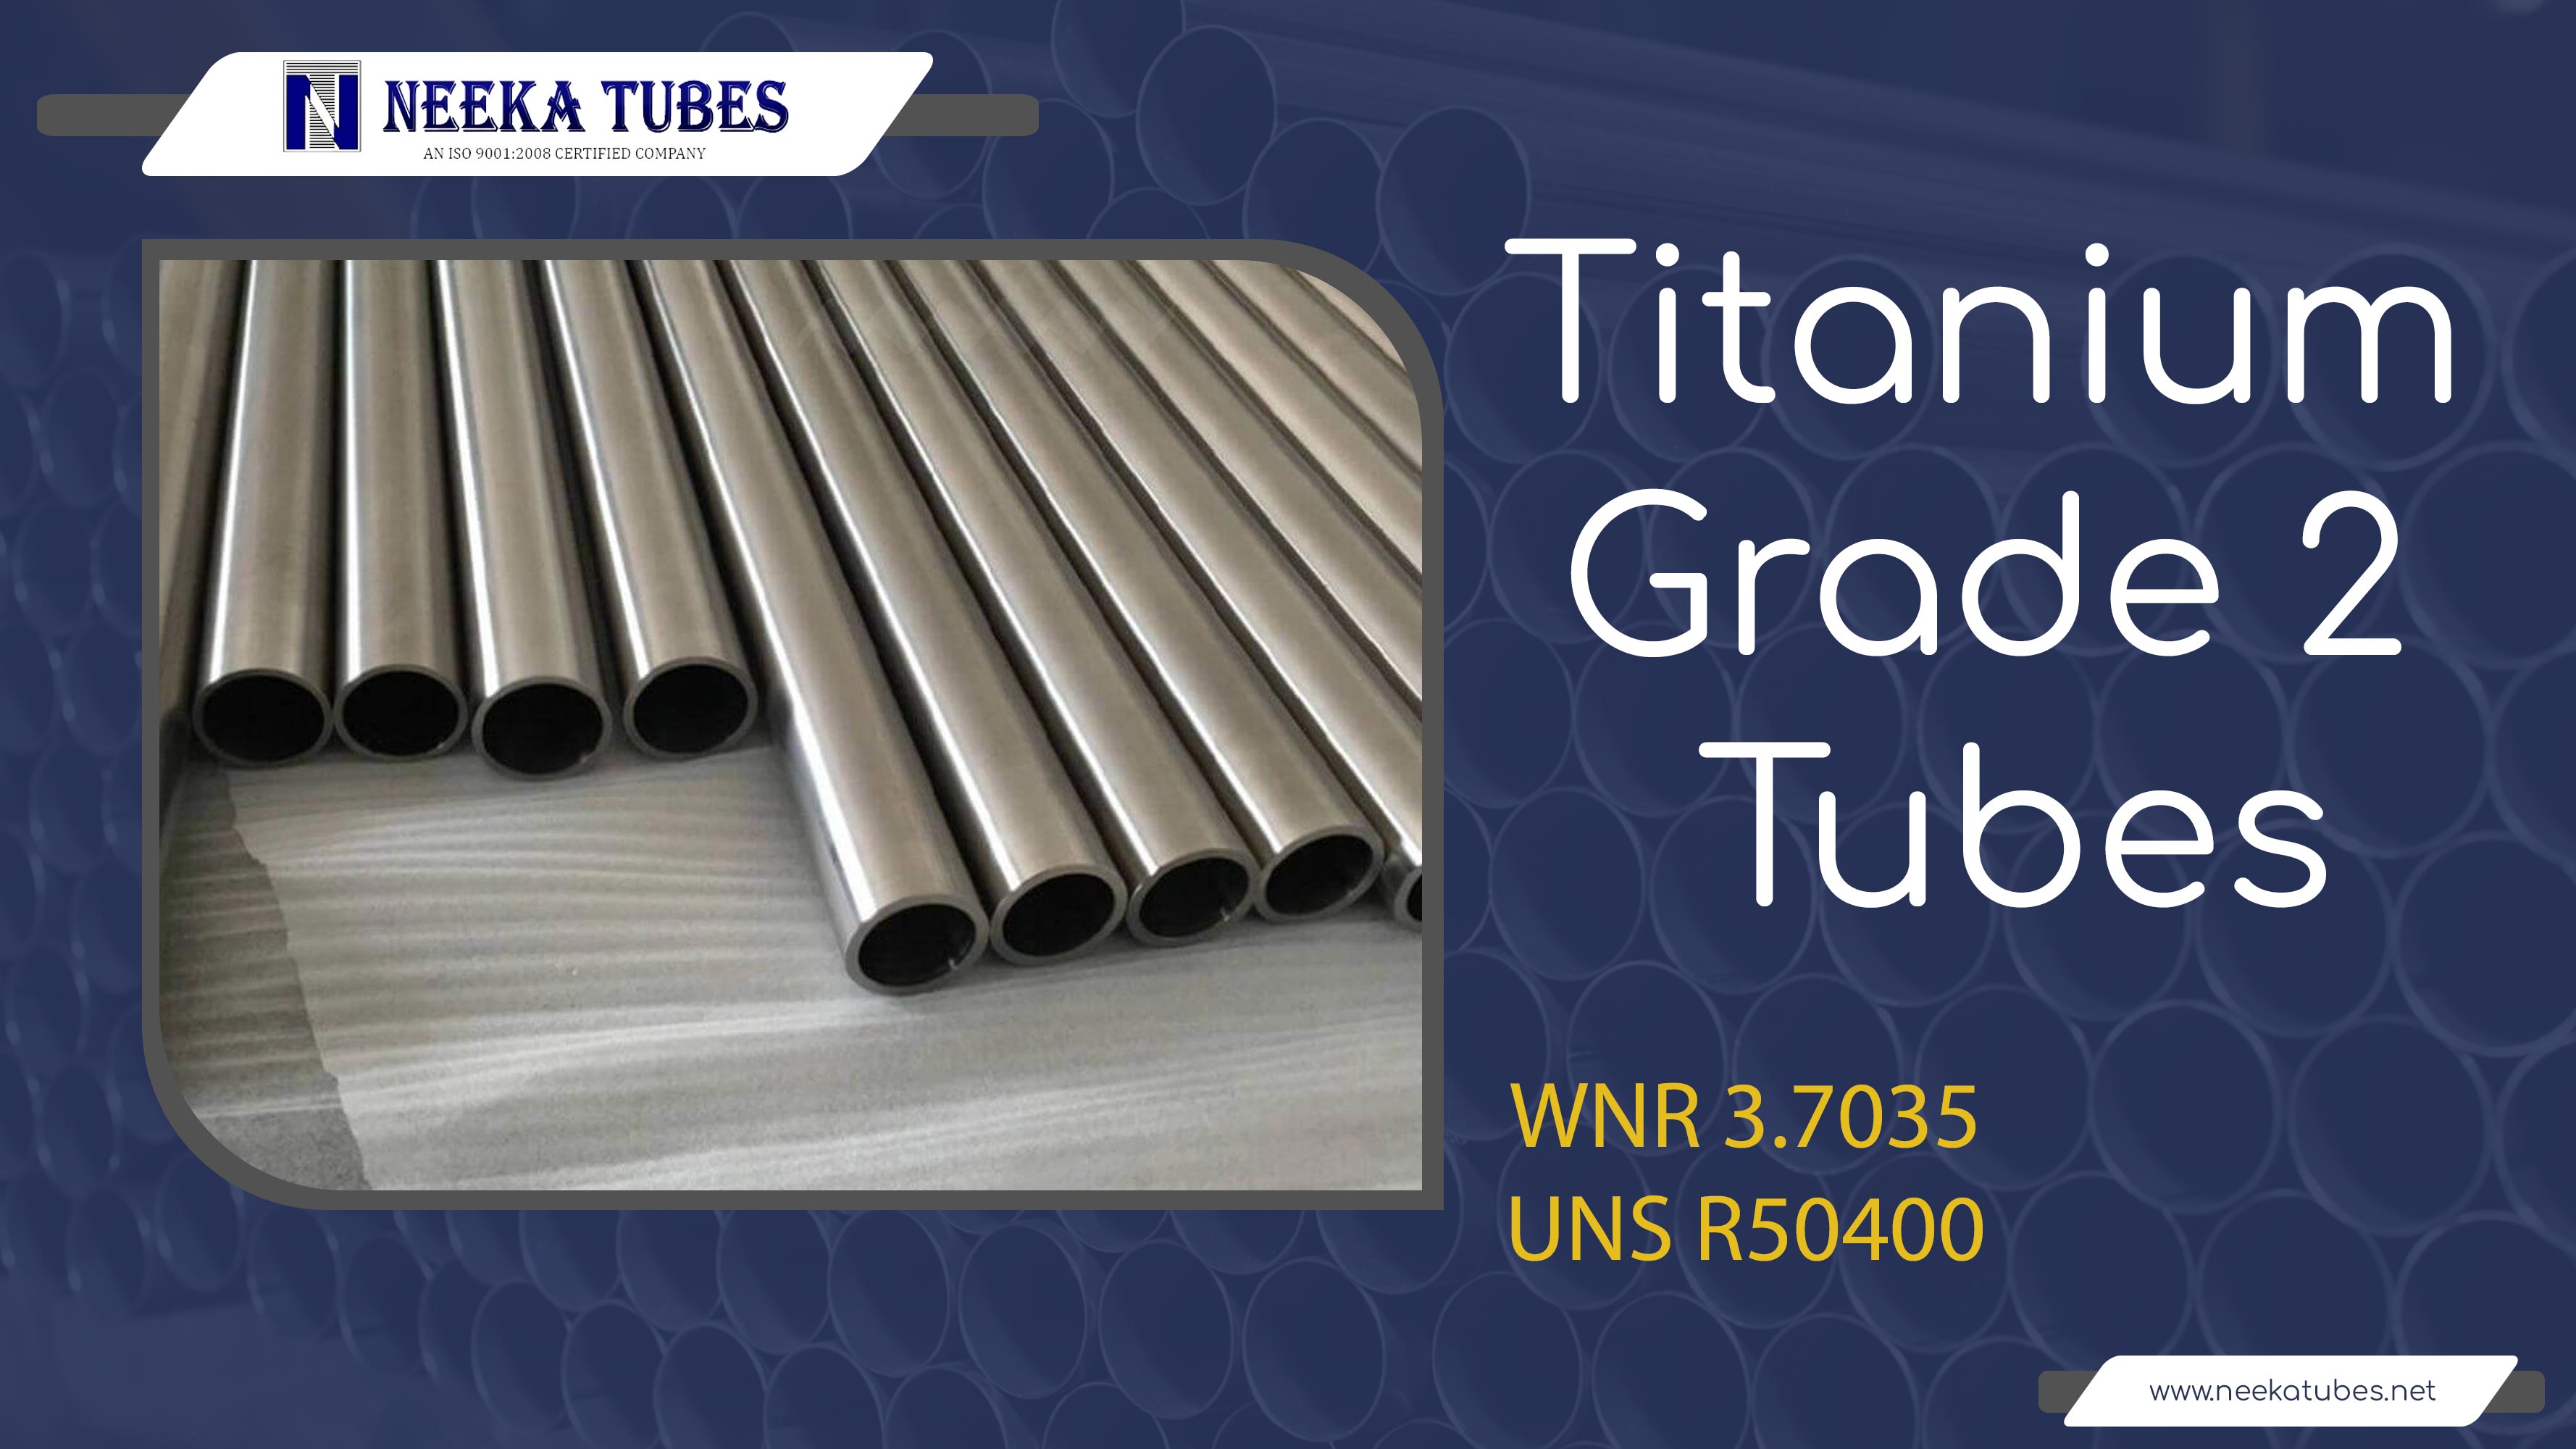 Tittanium grade 2 tubes